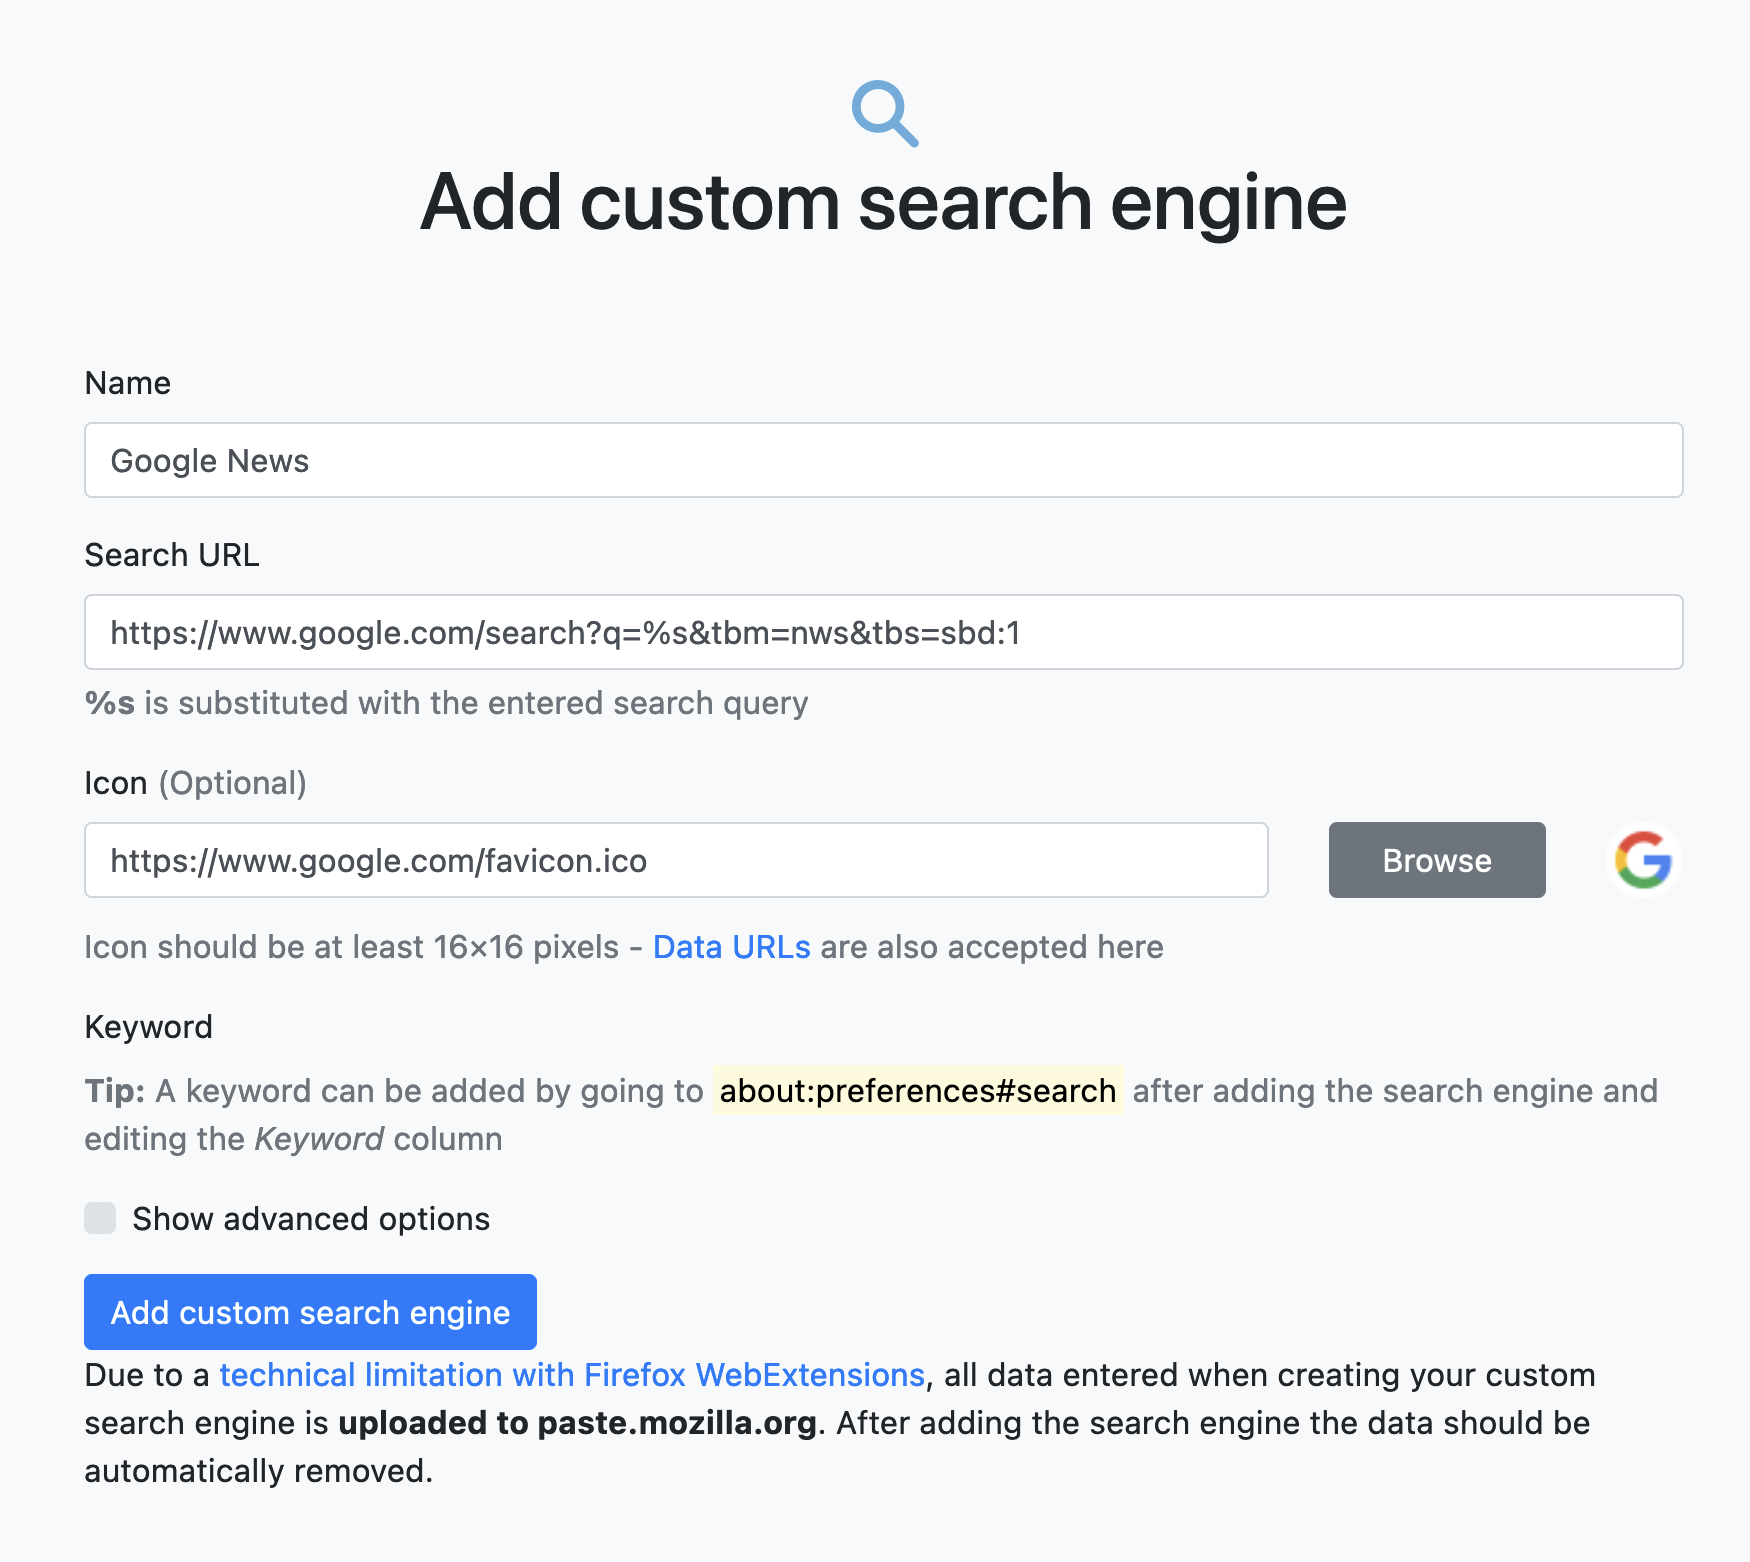 Firefox-Erweiterung “Add custom search engine” konfigurieren